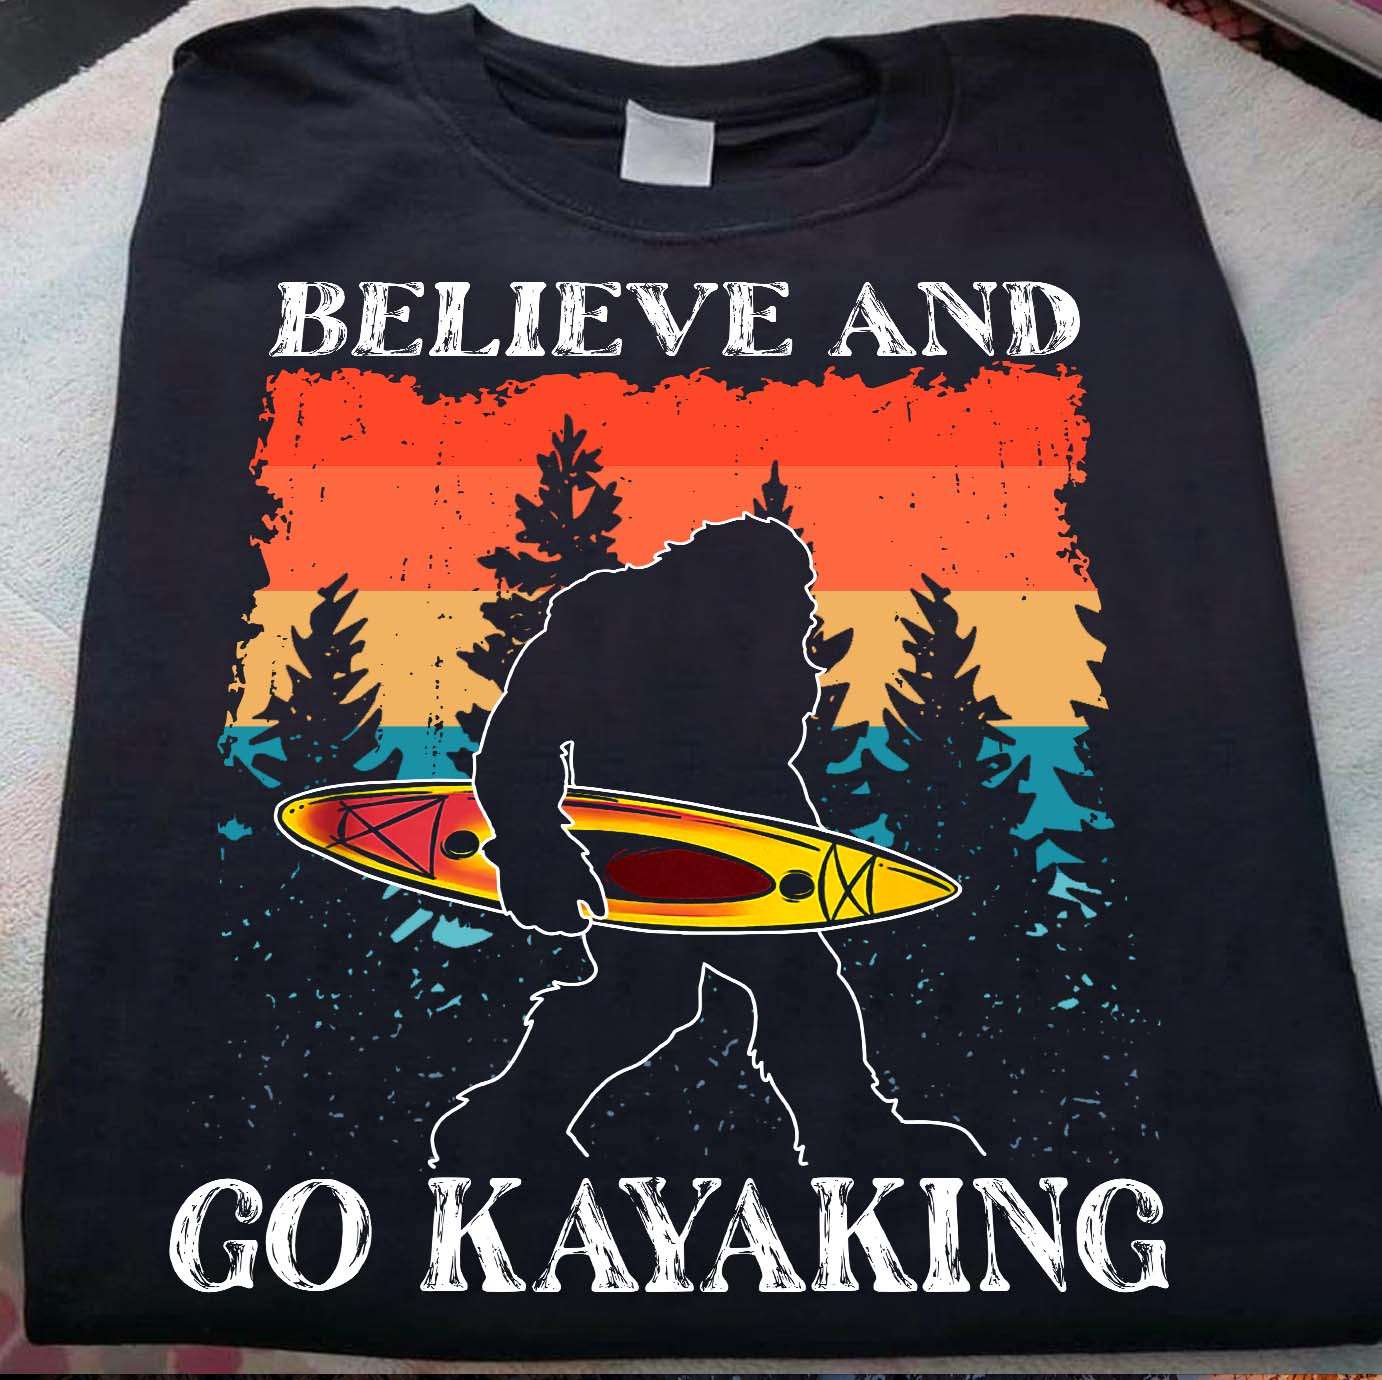 Believe and go kayaking - Love go kayaking, bigfoot kayaking